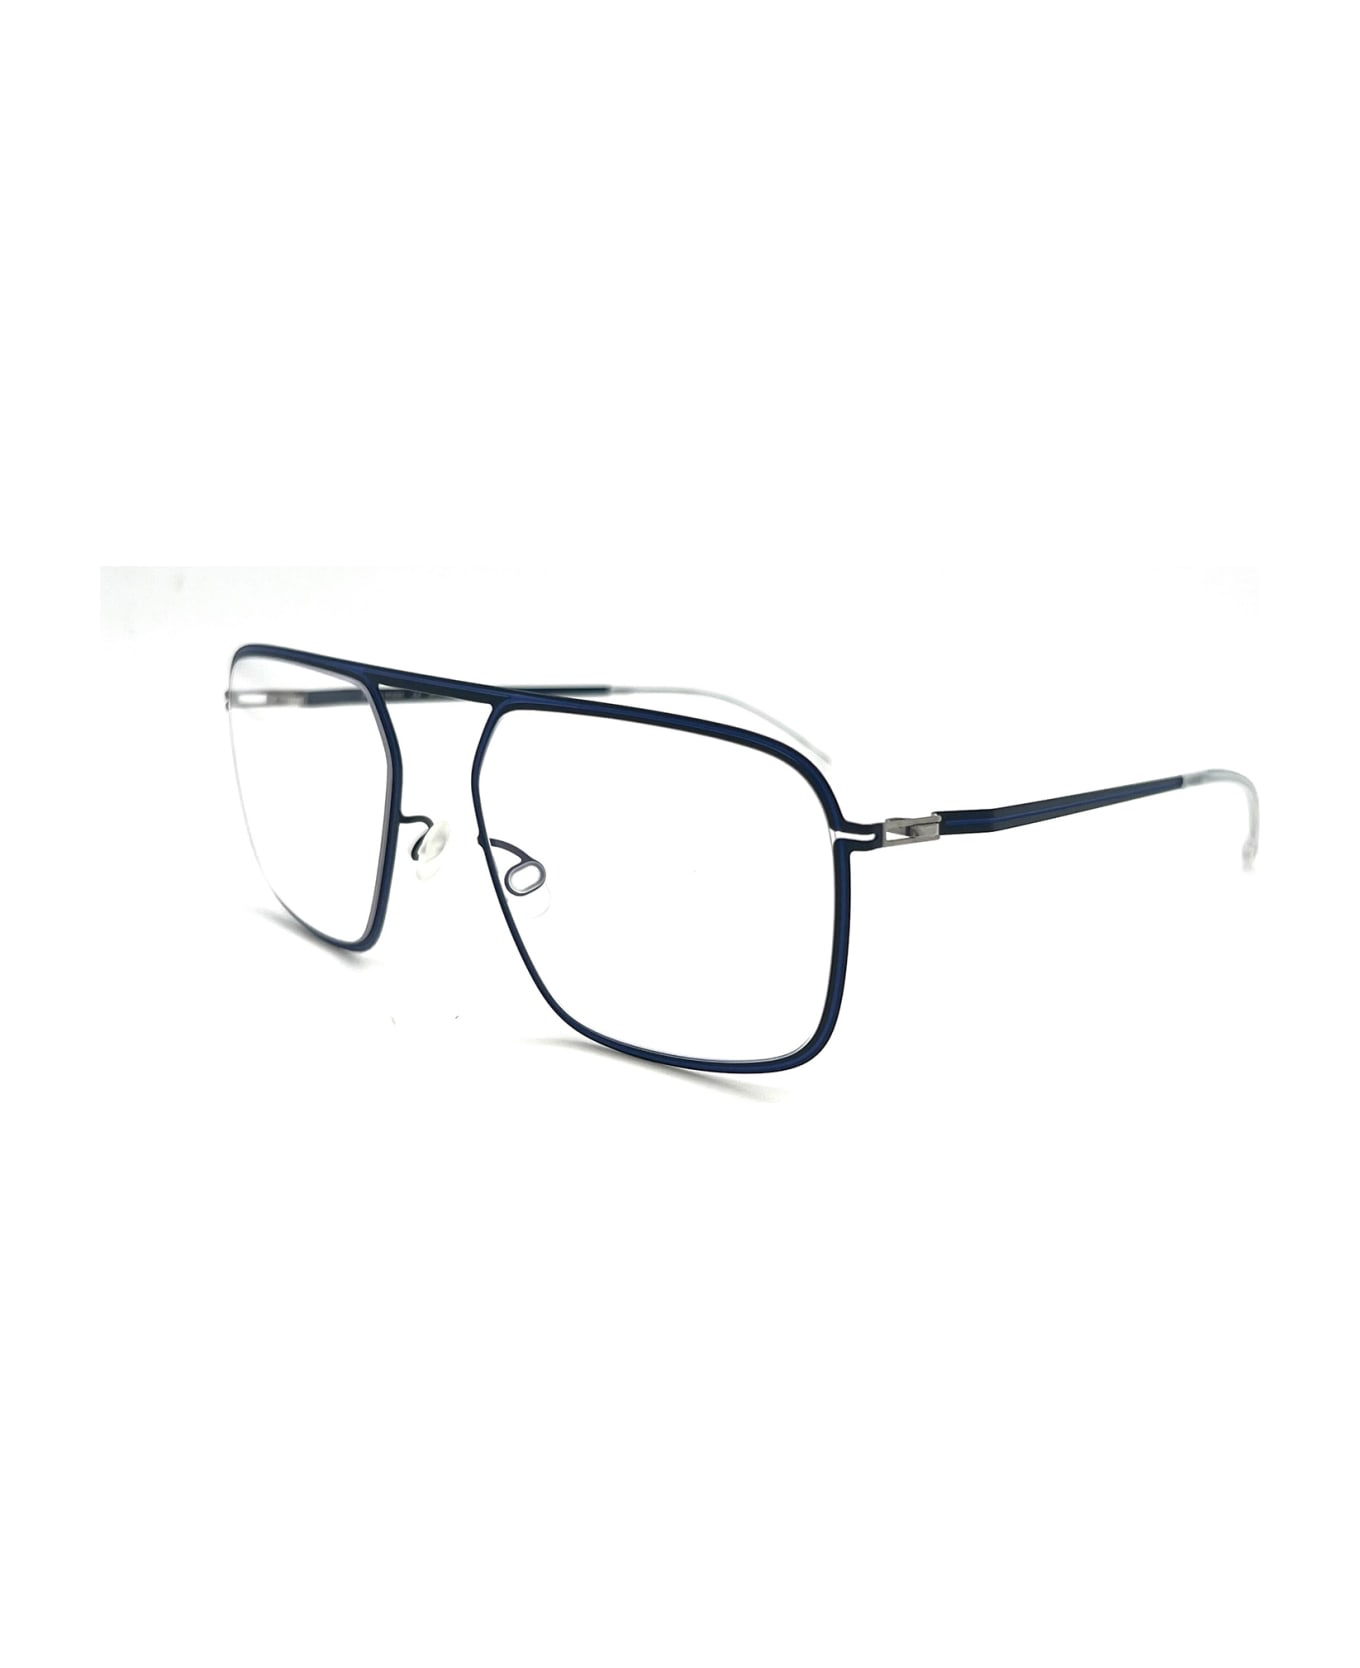 Mykita STUDIO 6.8 Eyewear - Navy/yale Blue アイウェア